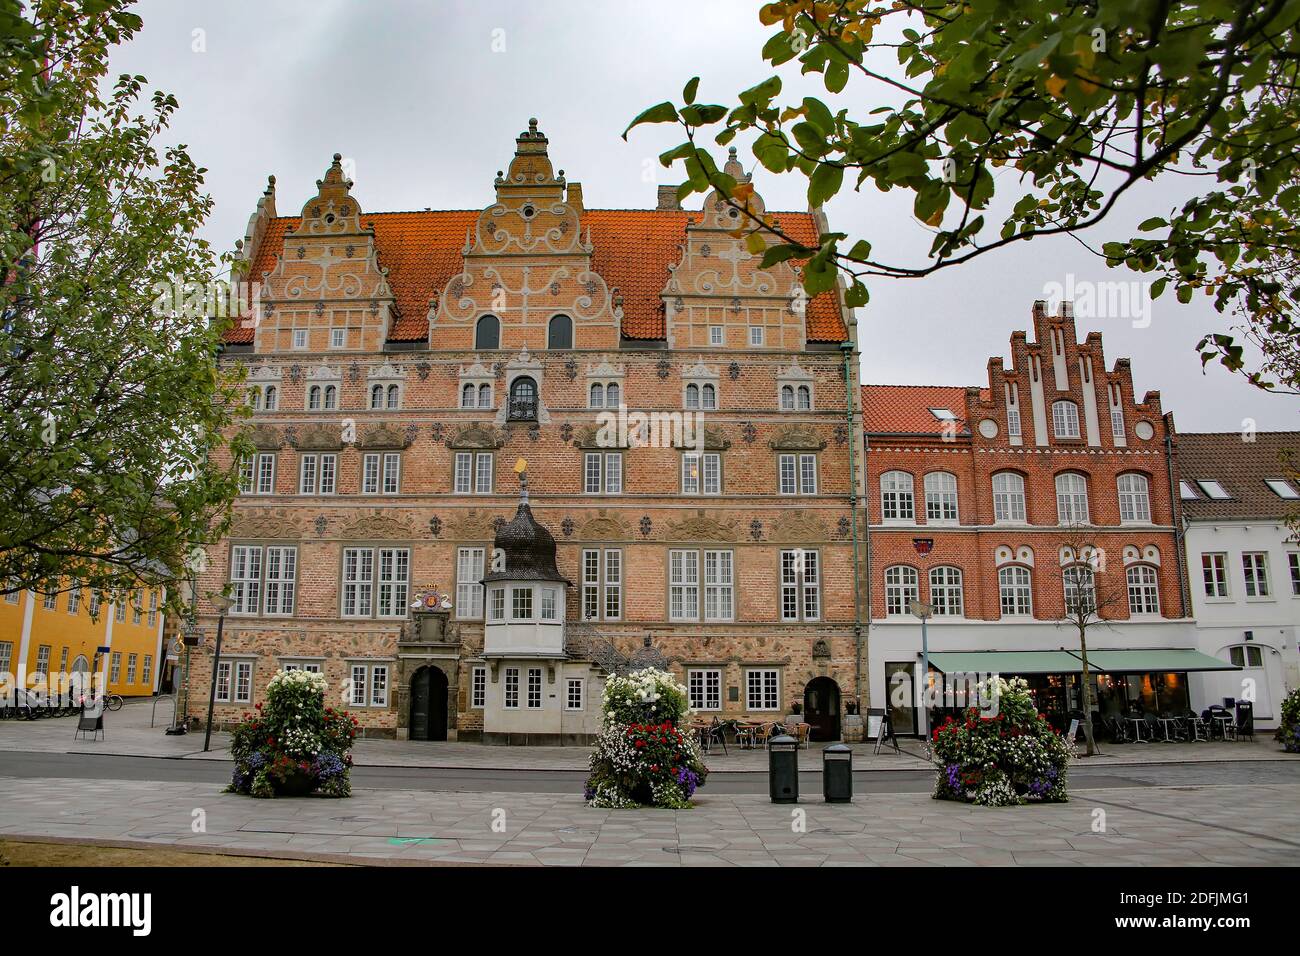 Aalborg escena callejera con un hermoso edificio de estilo renacentista holandés. Construido en 1624 para el comerciante Jens Bang, Aalborg, Jutlandia, Dinamarca Foto de stock